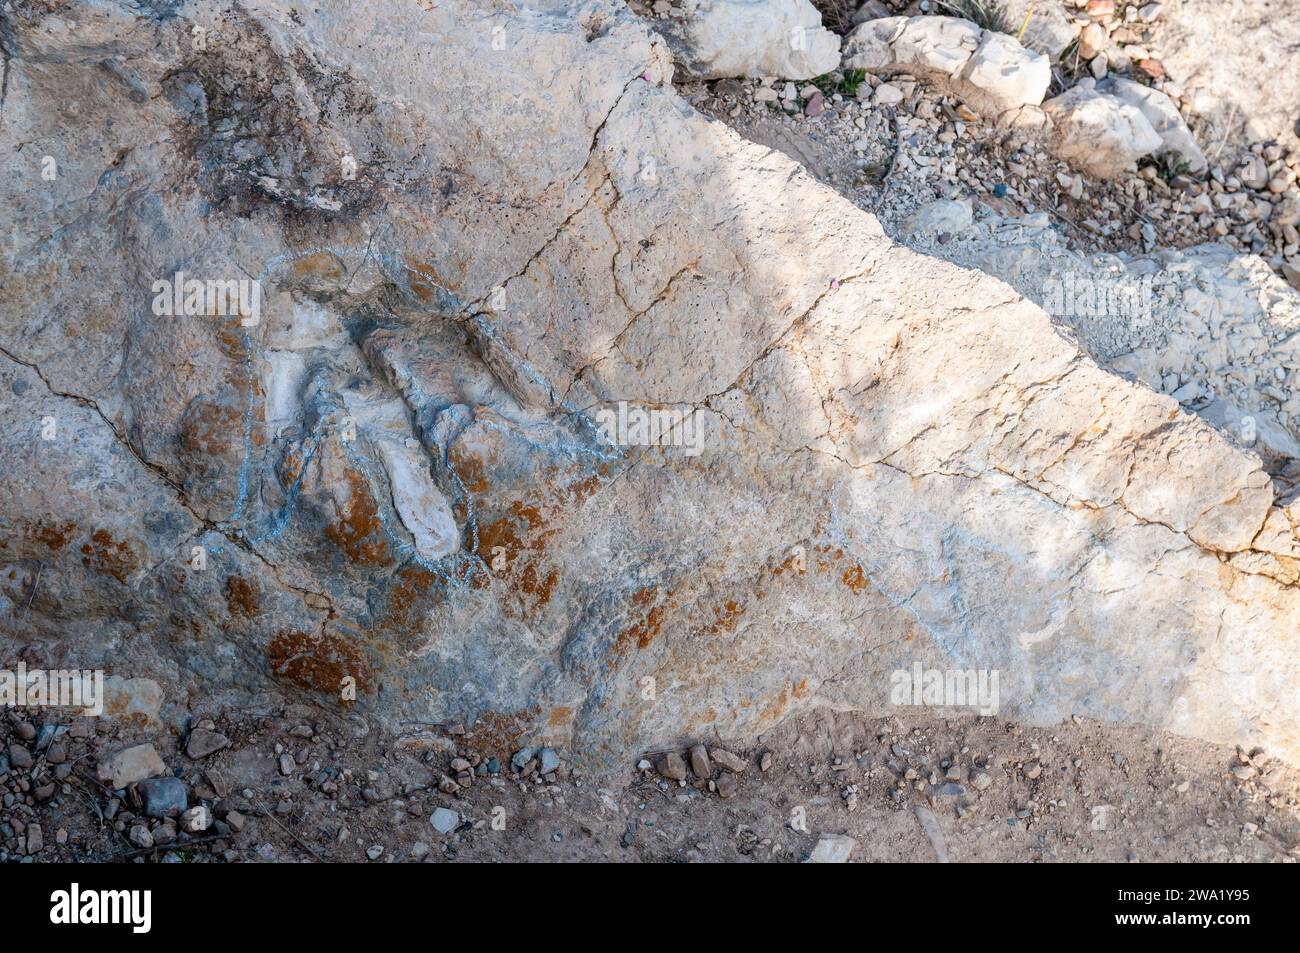 Fossilienspur, paläontologische Fundorte von Wirbeltieren aus der frühen Kreidezeit, Villanueva de Huerva, Aragon, Spanien Stockfoto